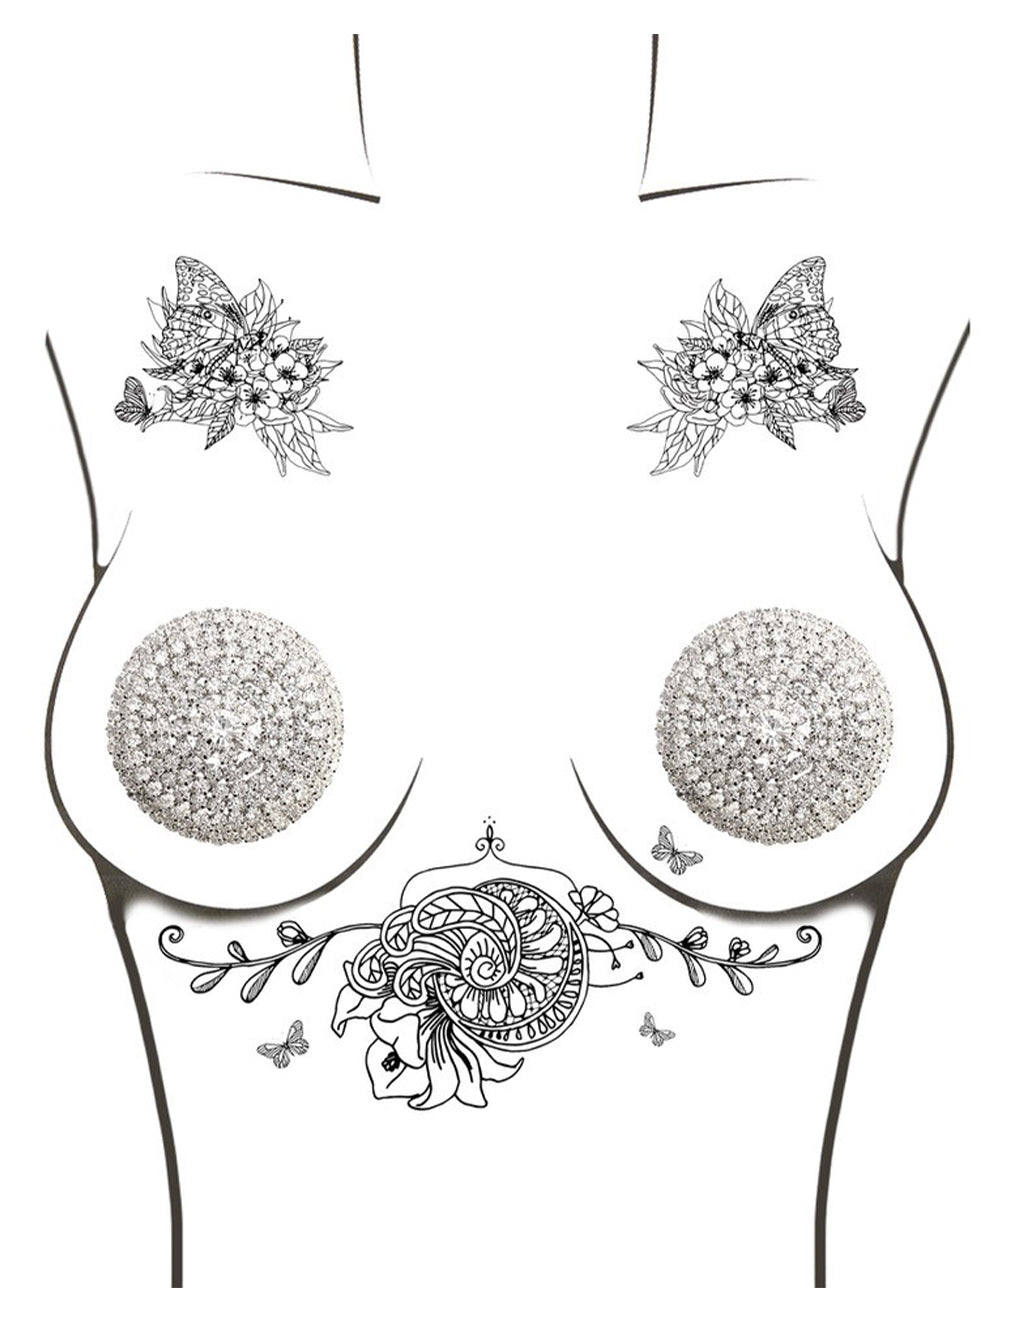 Neva Nude Round Jewel Pasties- On Drawn Model